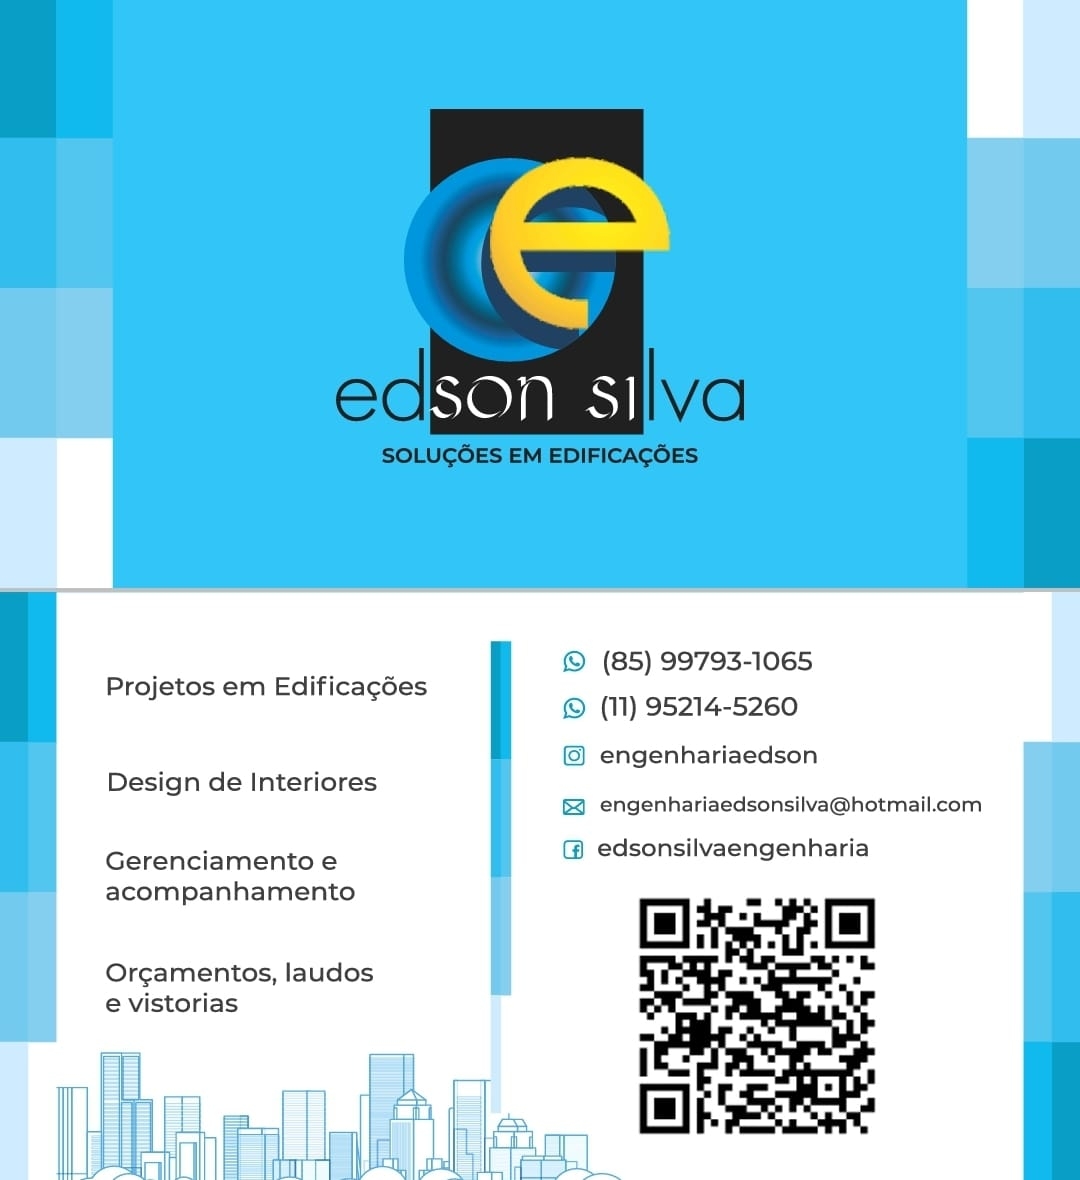 Edson Silva Soluções em Edificações